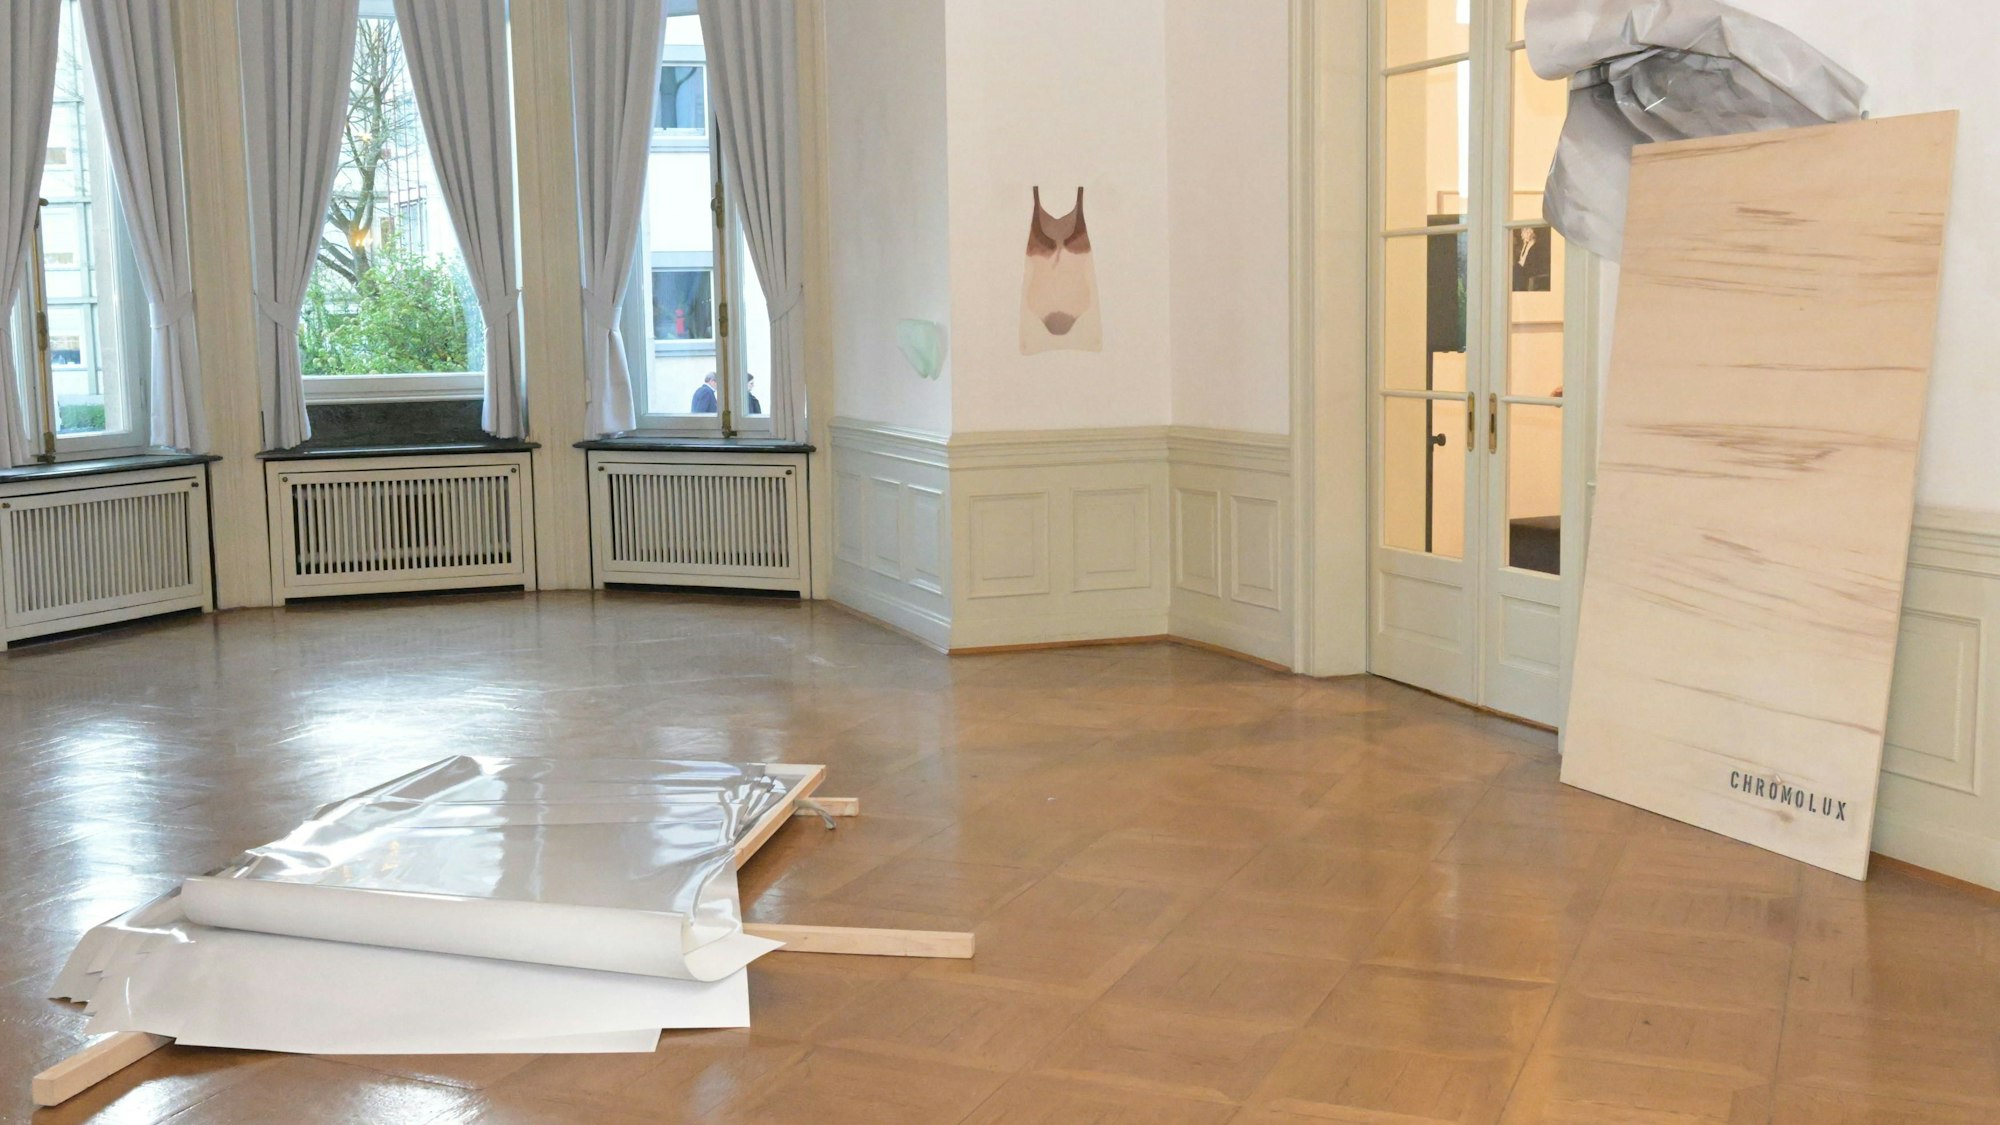 Werke von Michael Wittassek und Darja Eßer erhielt das Kunstmuseum Villa Zanders in Bergisch Gladbach als Schenkungen. Die Installation „Chromolux“ von Michael Wittassek prägt den Ausstellungsraum.